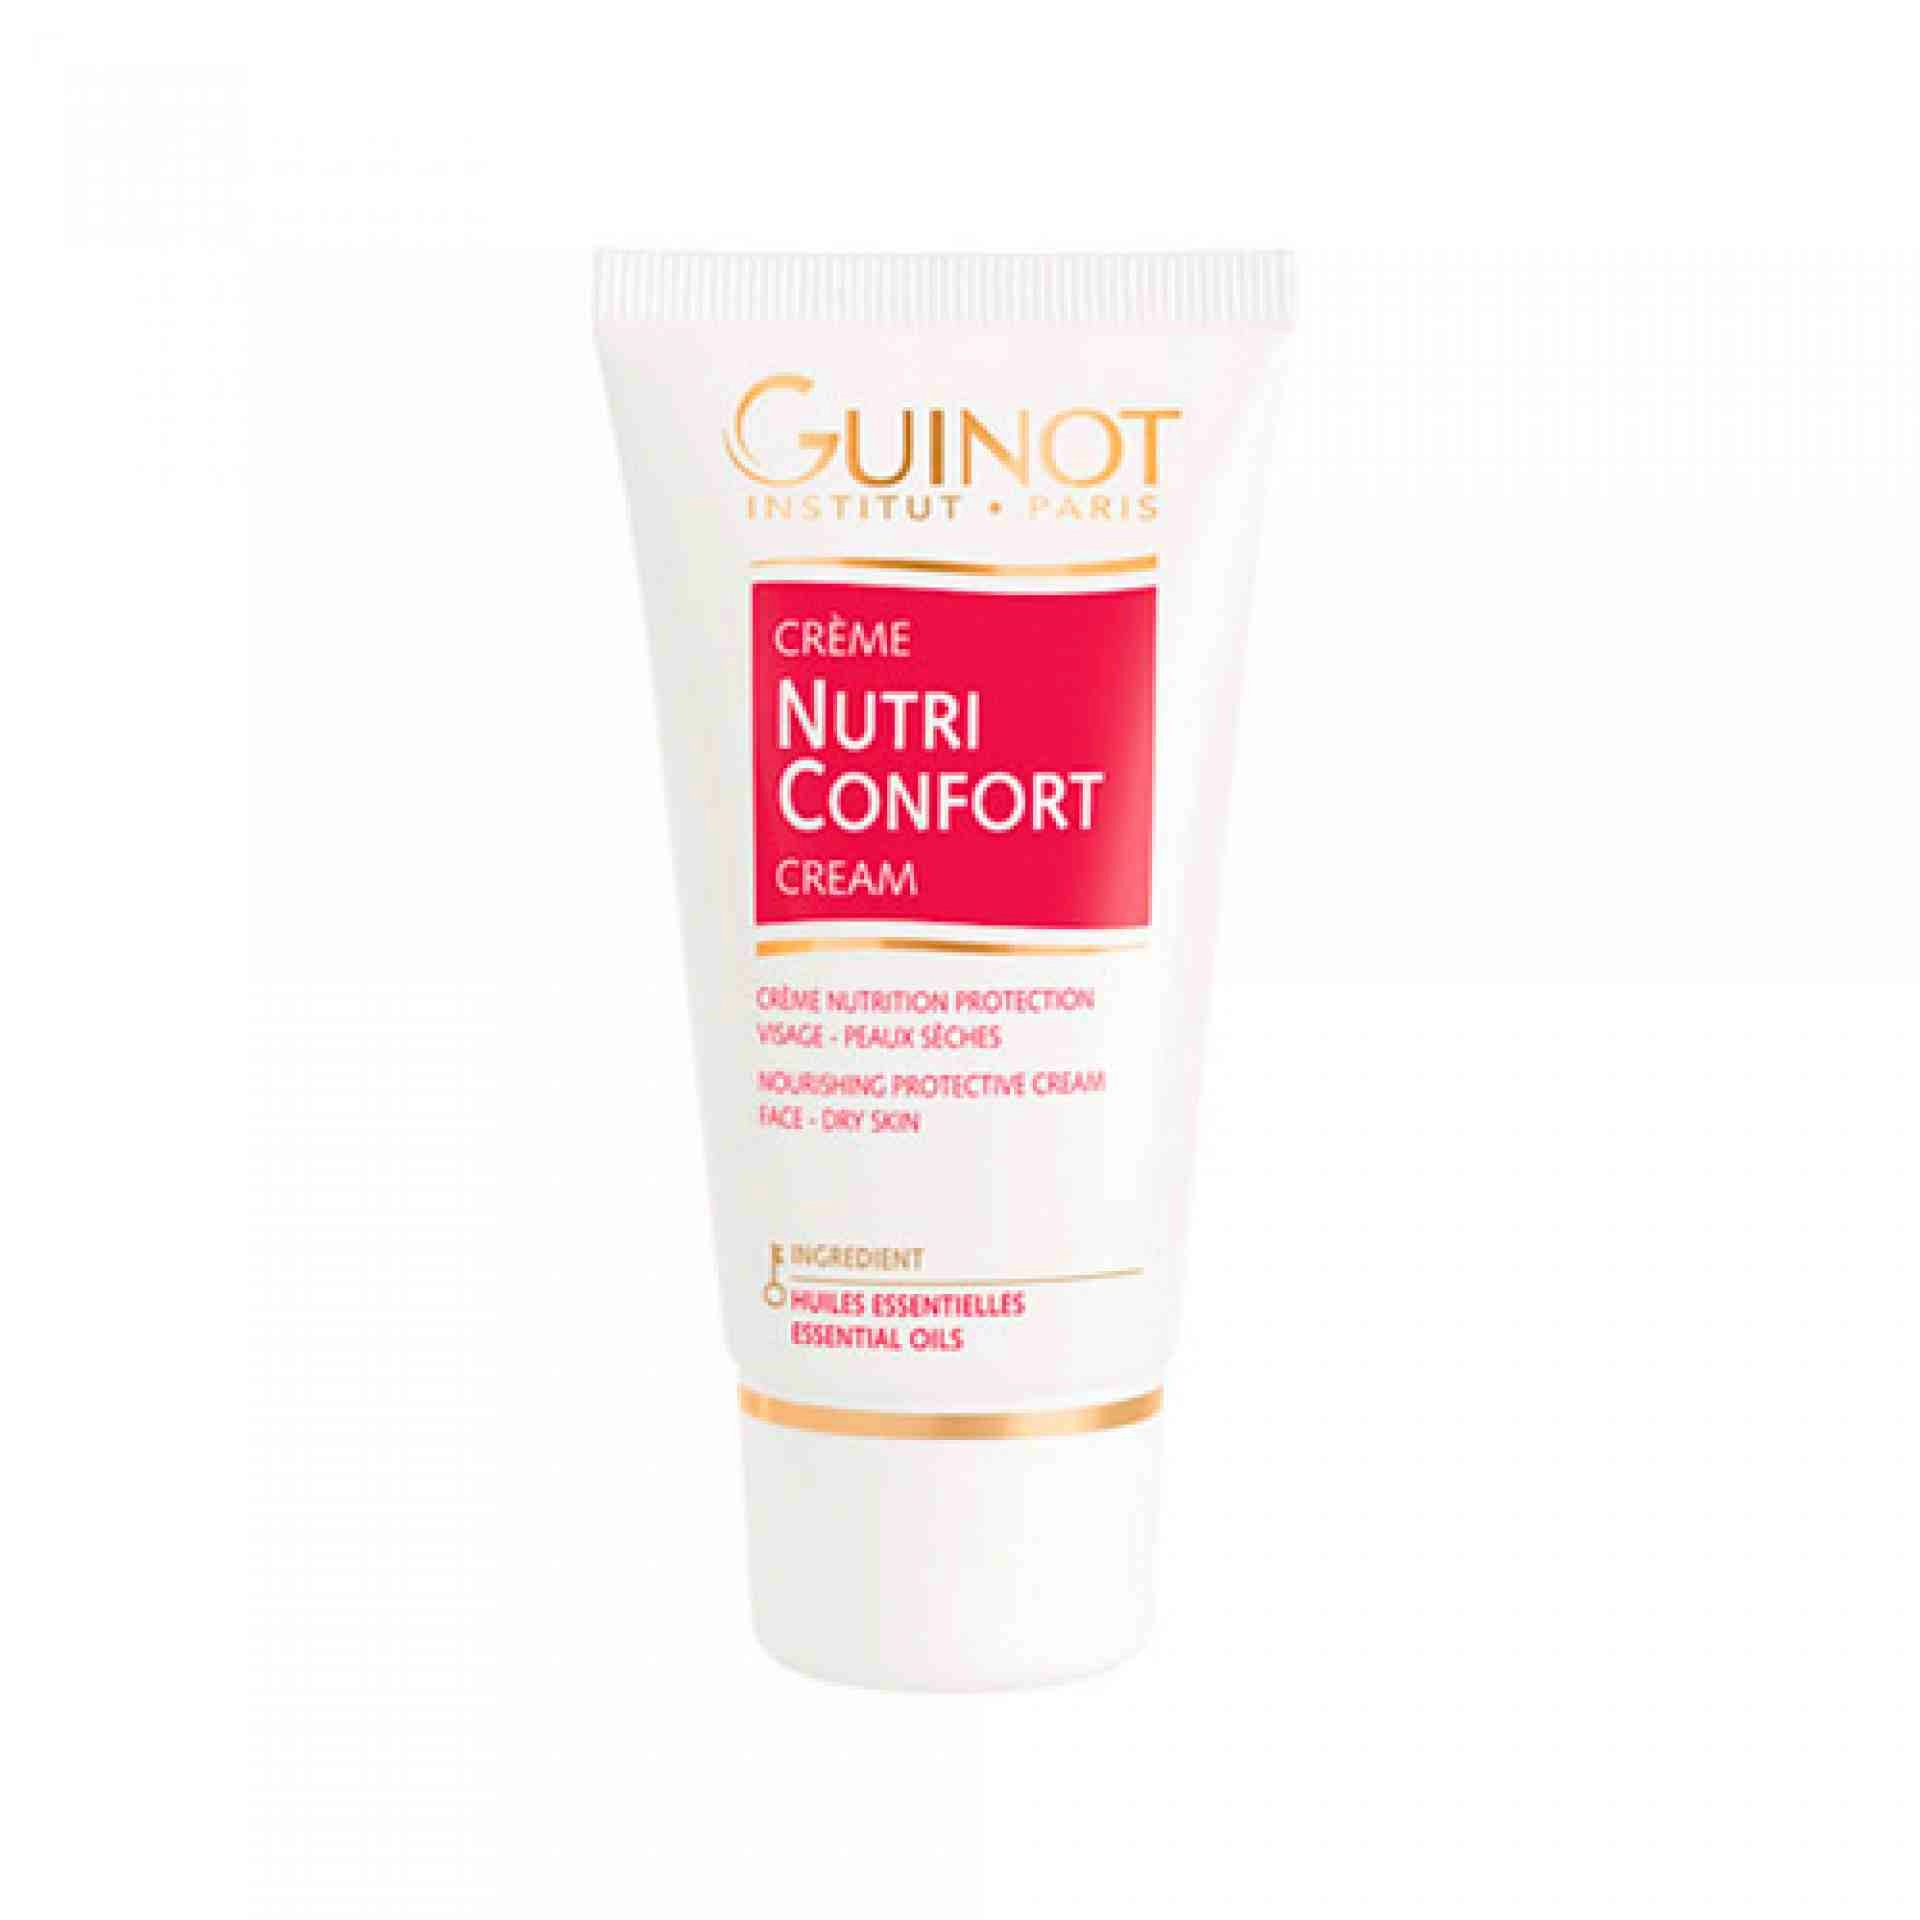 Crème Nutri Confort | Crema Reparadora 50ml - Guinot ®